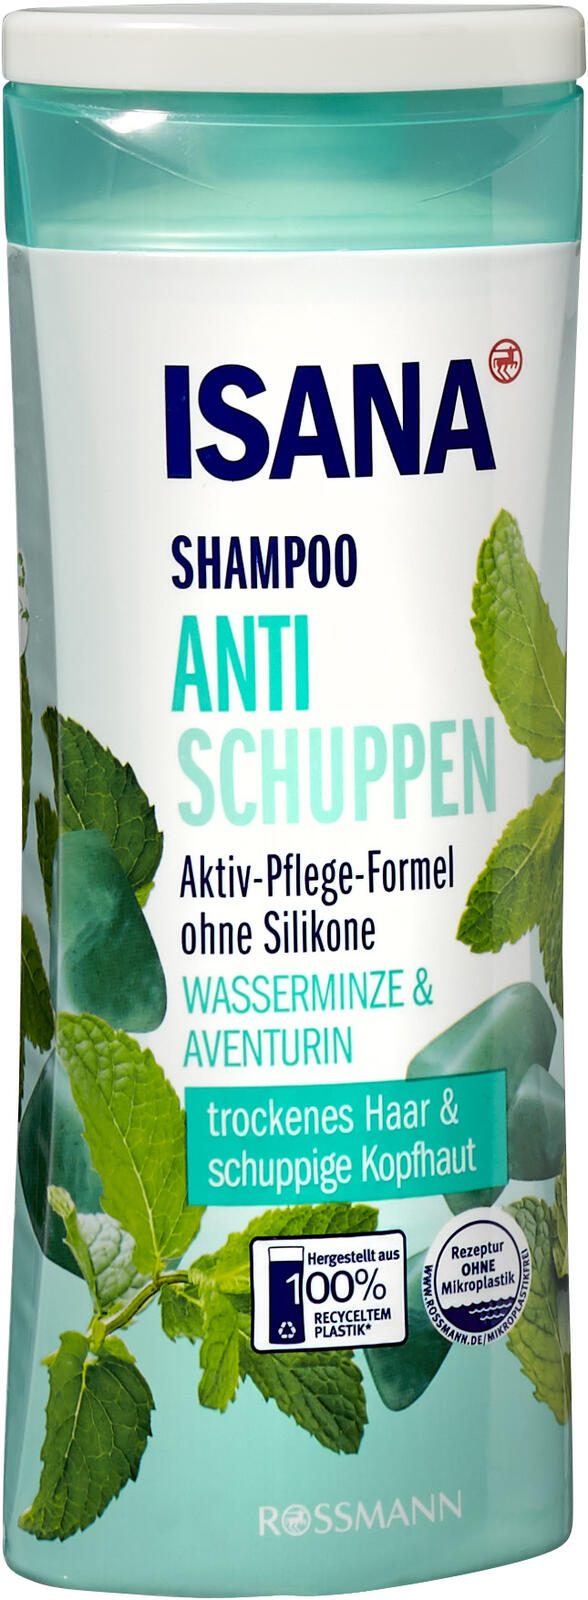 ISANA Shampoo Anti Schuppen 300 ml